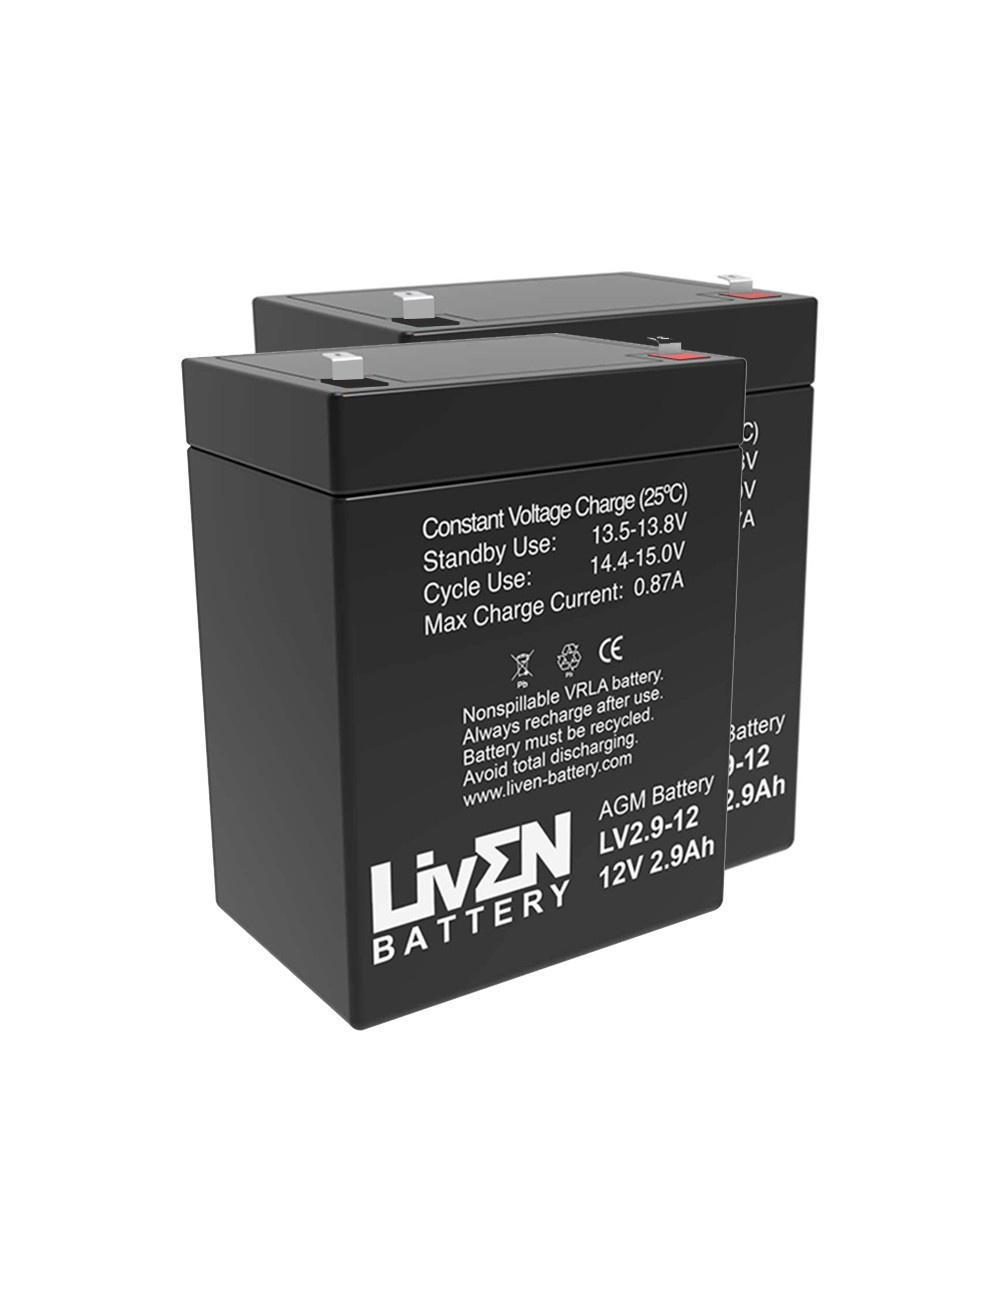 Pacote de 2 baterias (24V) para elevadores de transferência e cestas Tecnimoem Powerlift 175 de 12V 2,9Ah C20 Liven LV2.9-12 - 1